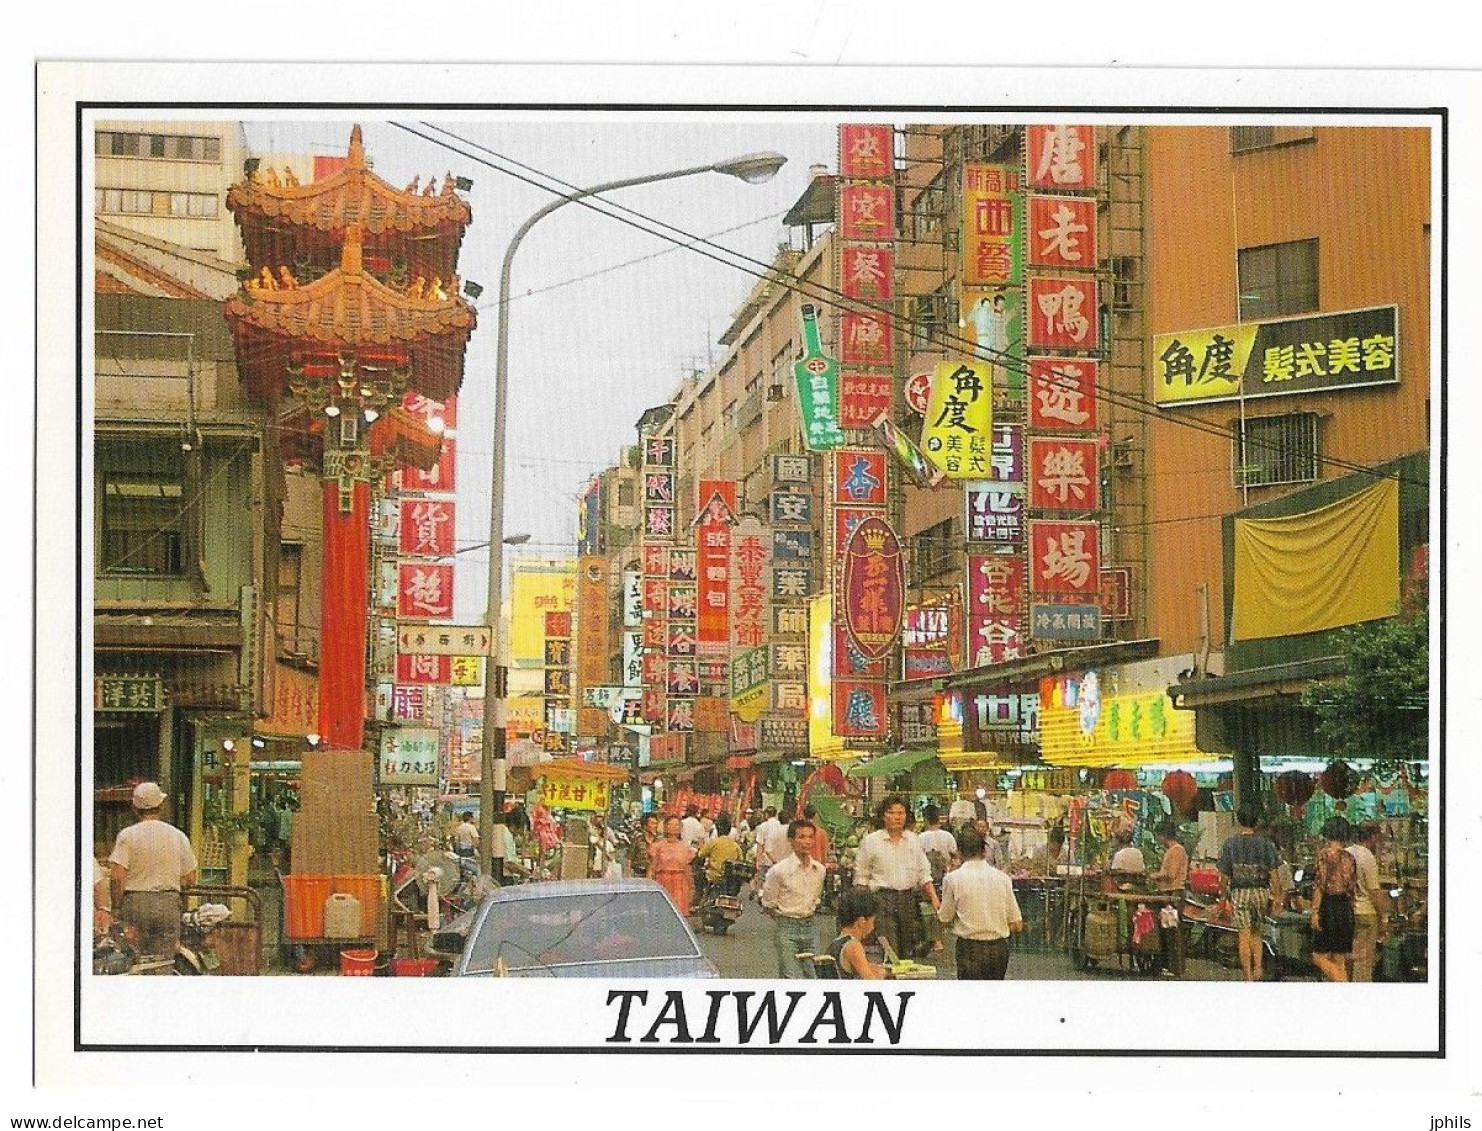 TAIWAN Market - Taiwan